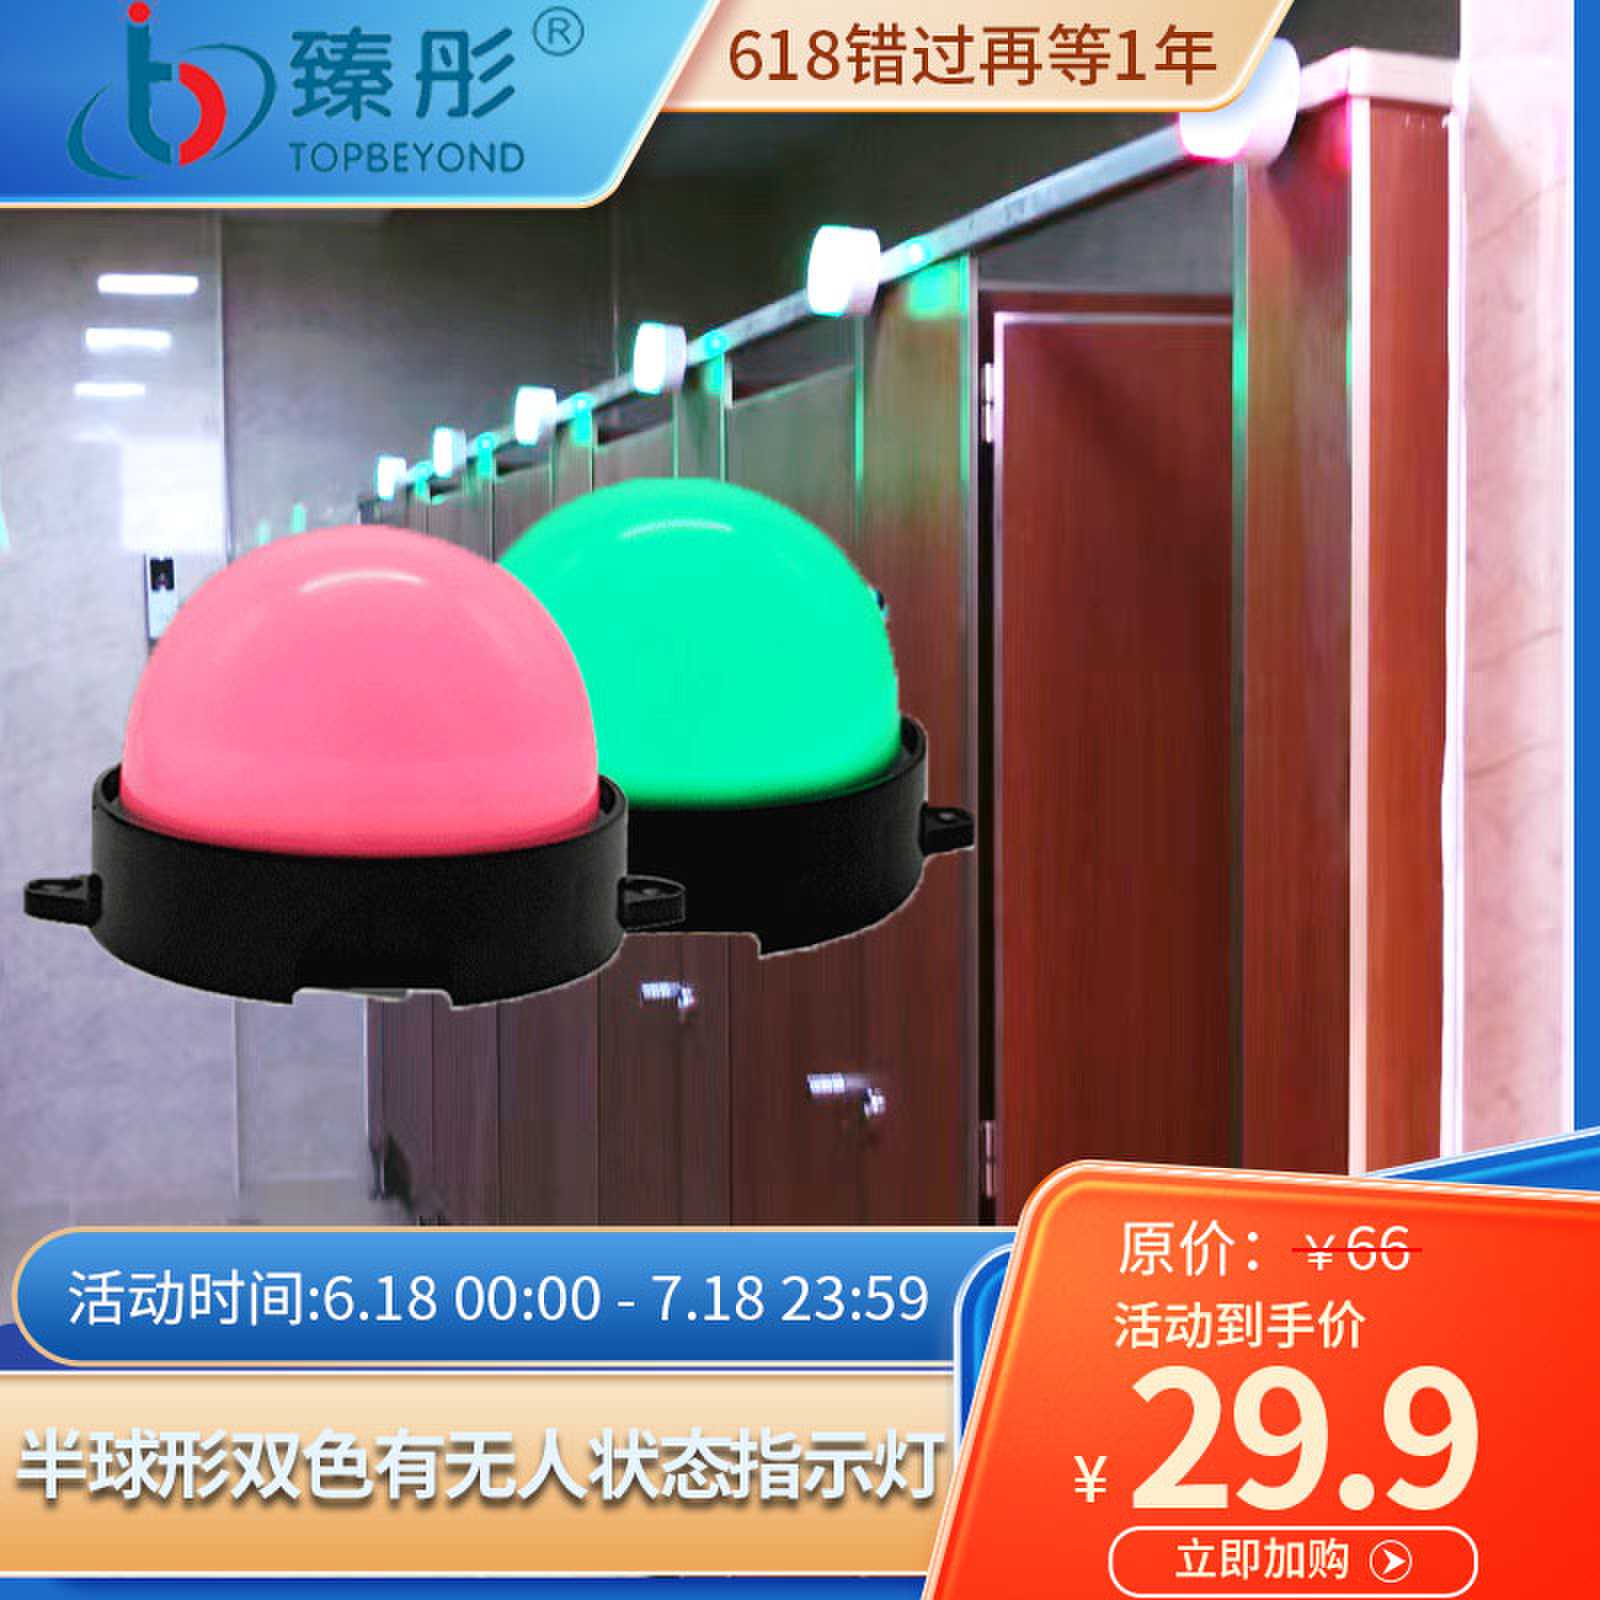 智慧厕所系统半球形LED指示灯智能引导系统蹲位感应有人无人状态